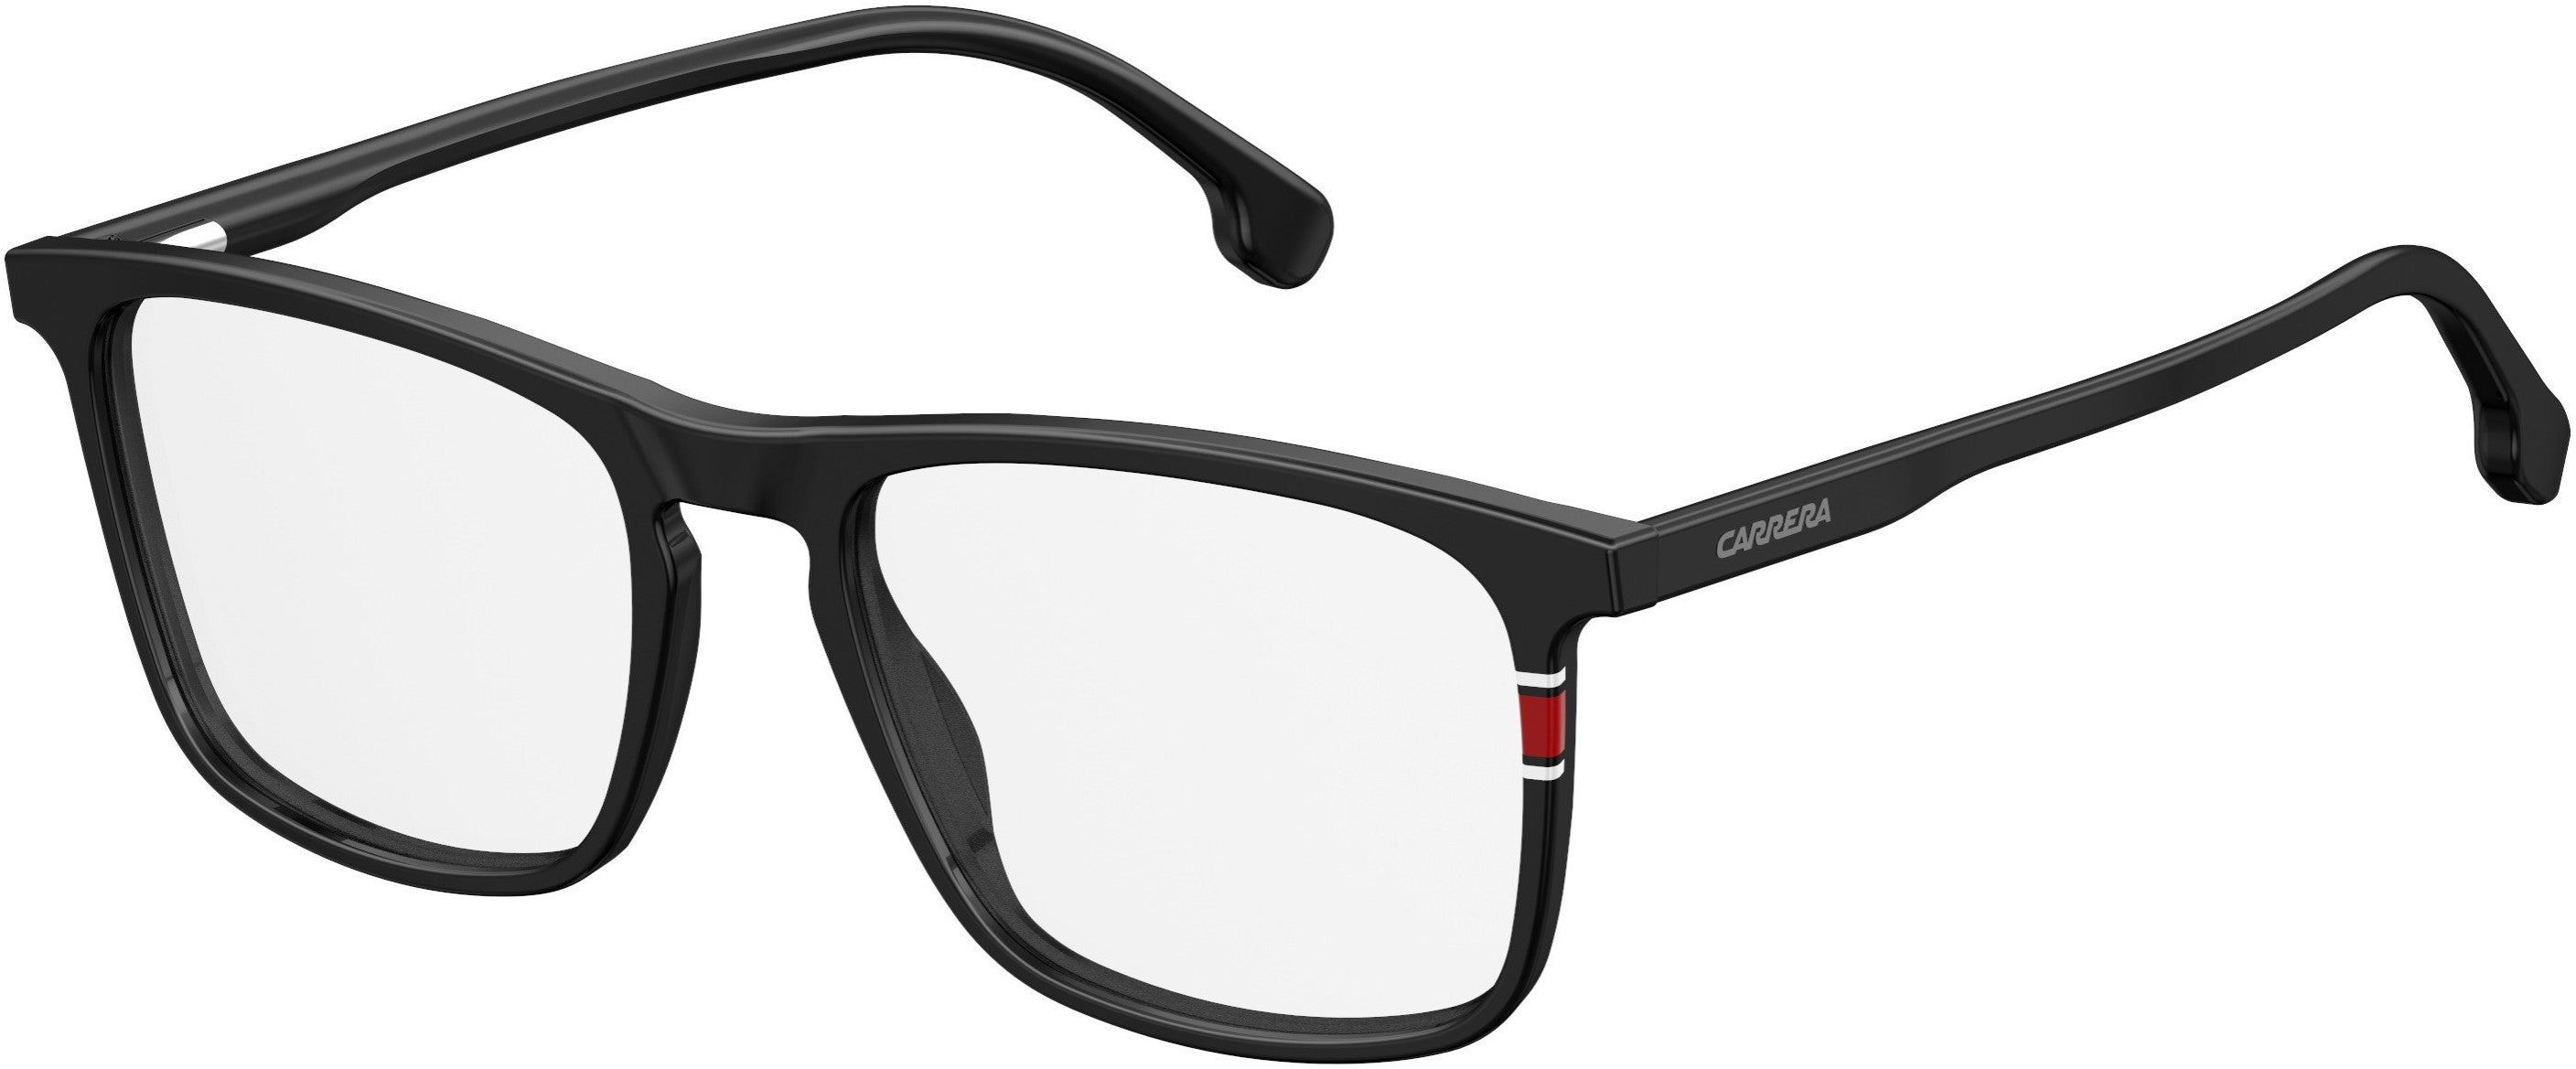  Carrera 158/V Rectangular Eyeglasses 0807-0807  Black (00 Demo Lens)